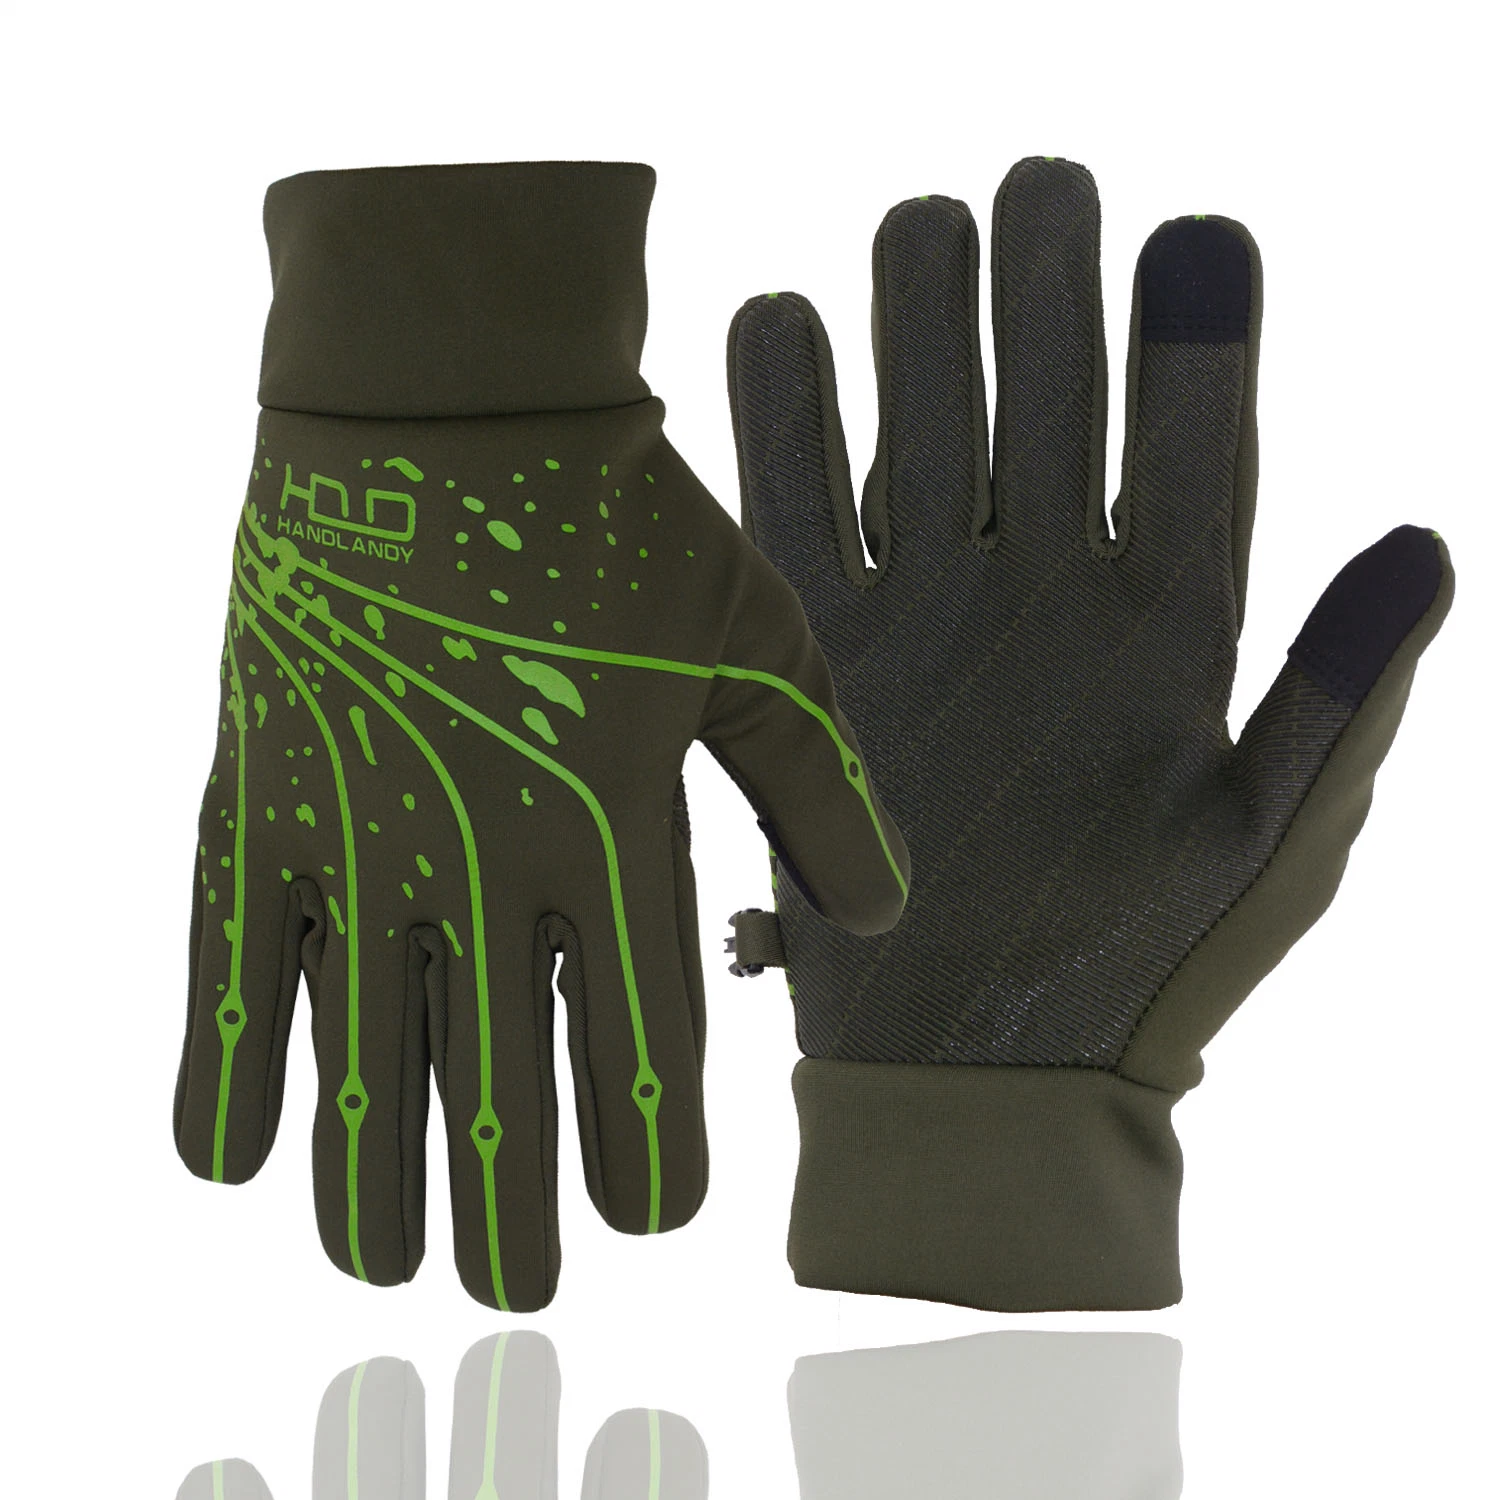 Pri Black Thermal Running Gloves, Touchscreen Outdoor Other Sport Riding Gloves for Men Women